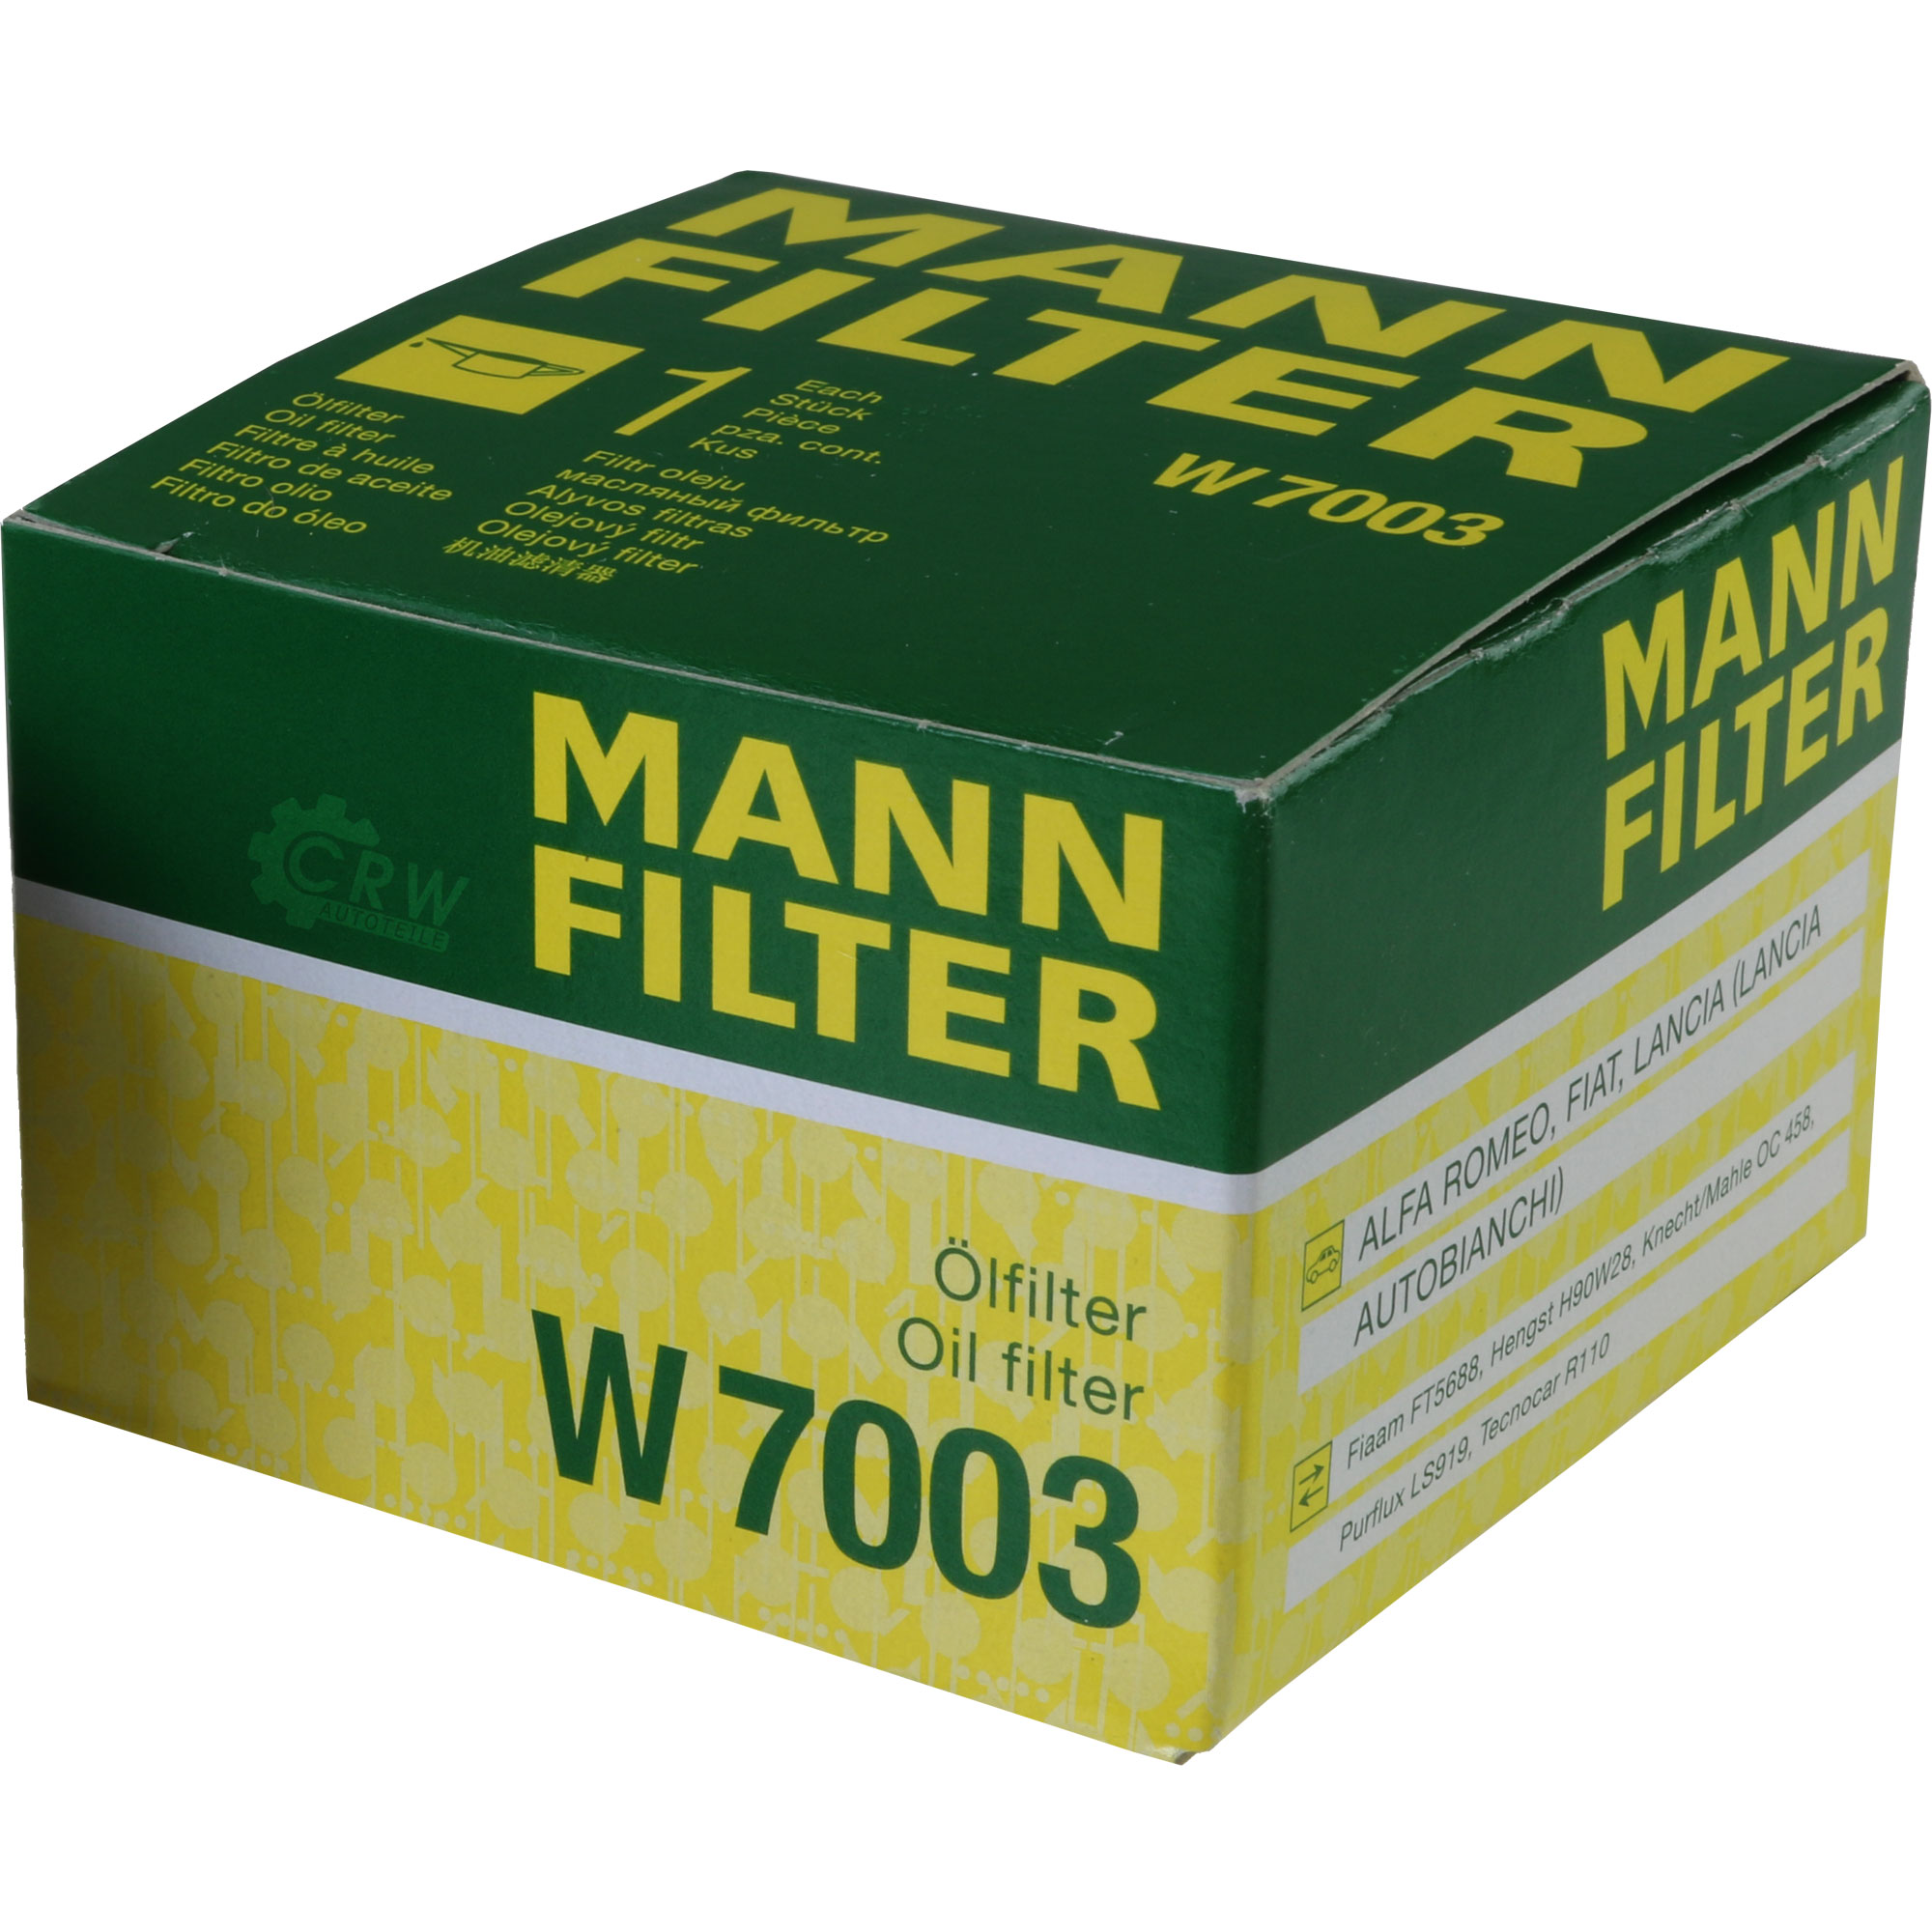 MANN-FILTER Ölfilter W 7003 Oil Filter